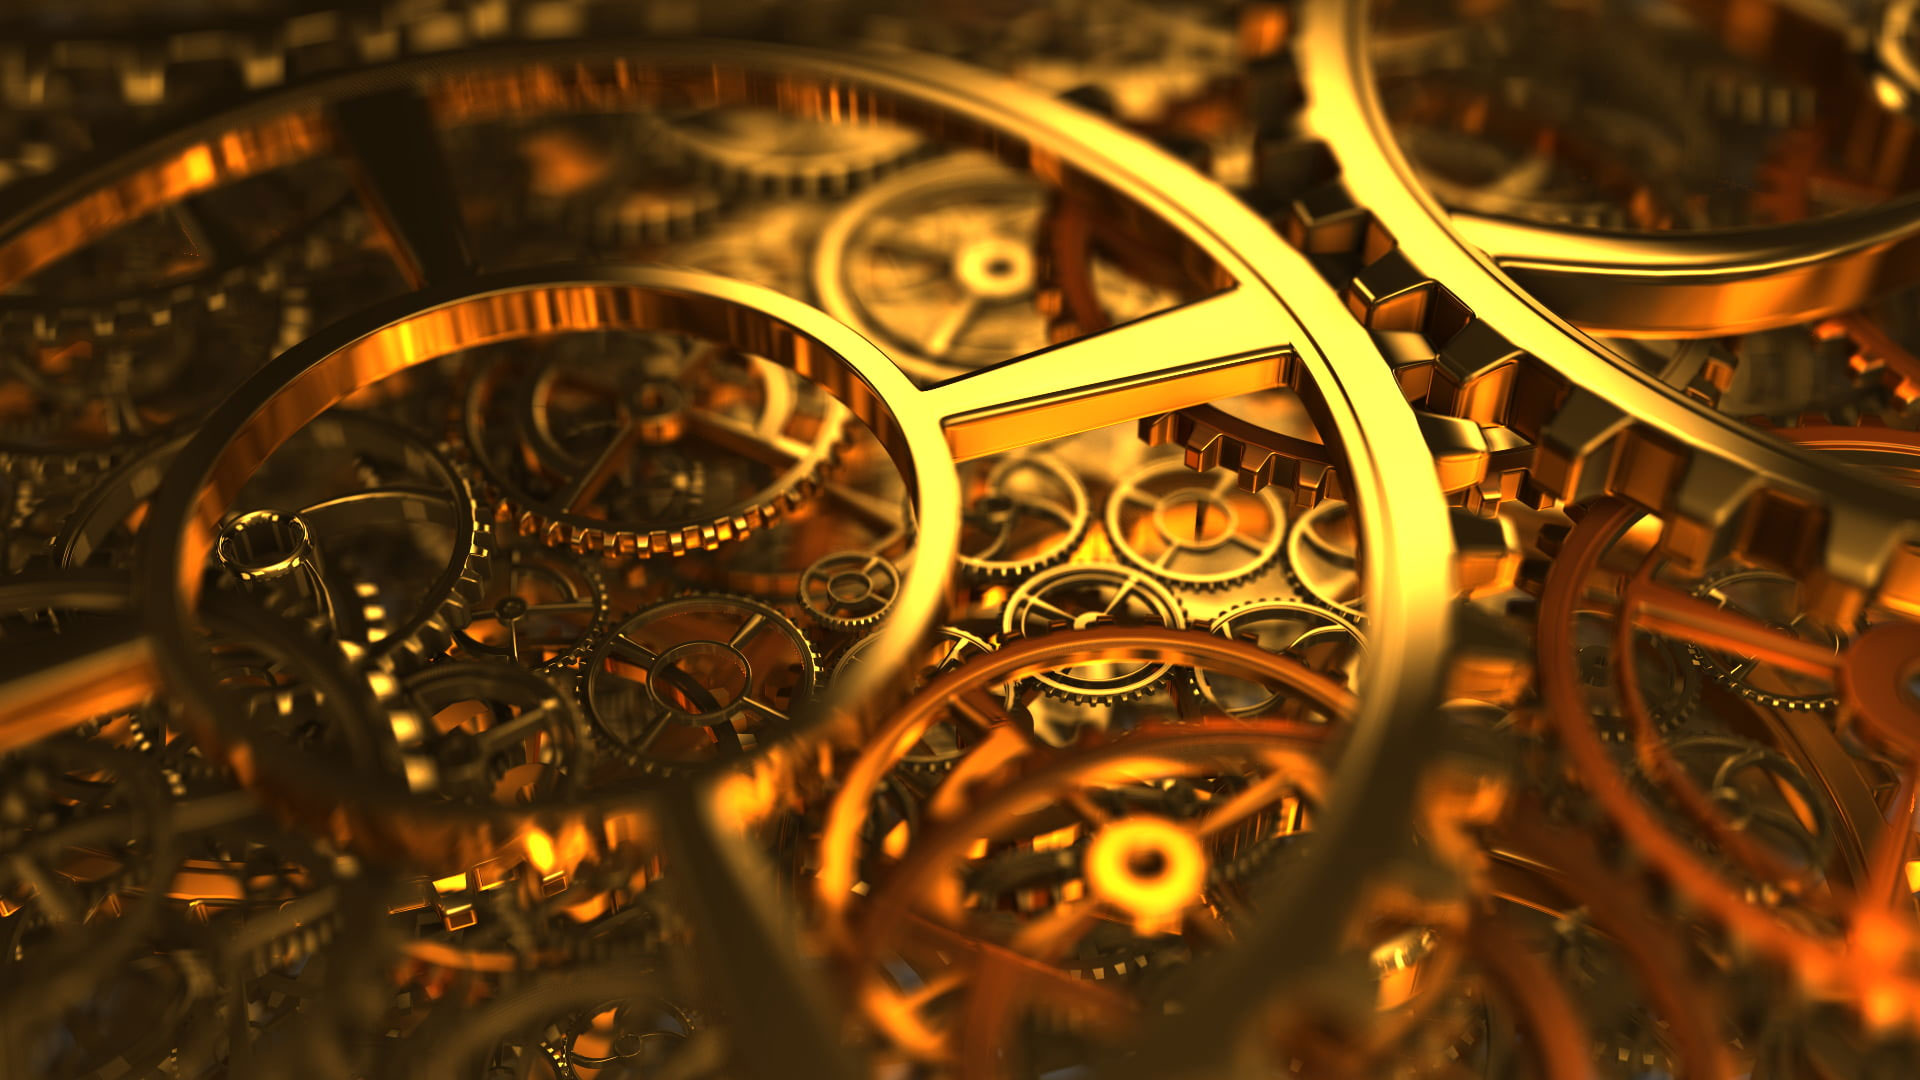 Brass-colored machine, gold gear mechanism, clockwork, gears